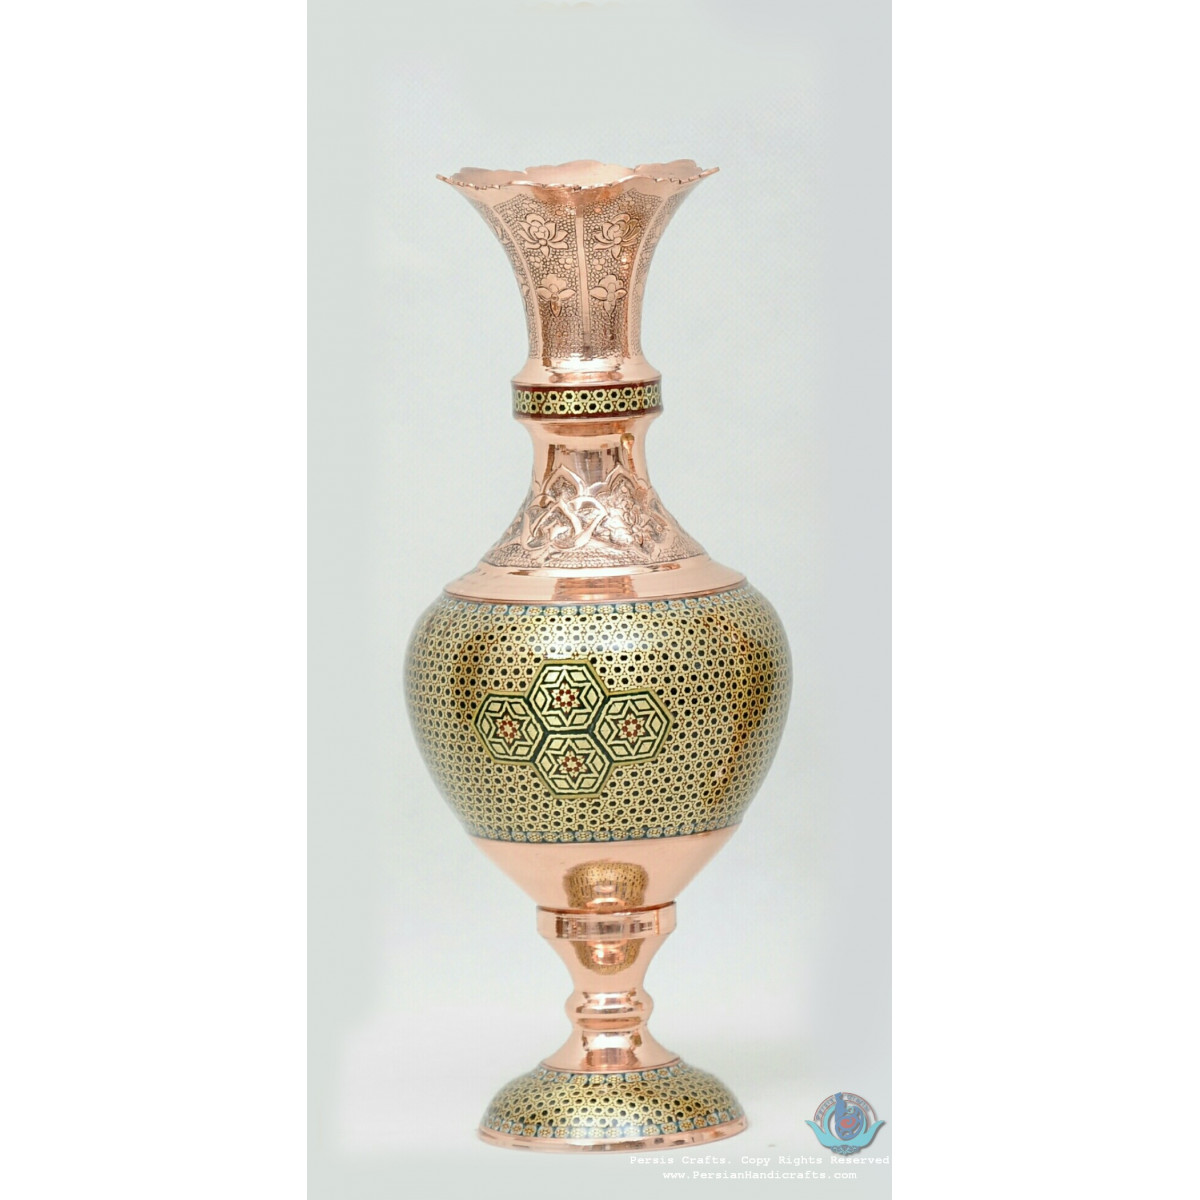 privileged Khatam Marquetry Flower Vase & Pedestal Dish Set - PKH1040-Persian Handicrafts